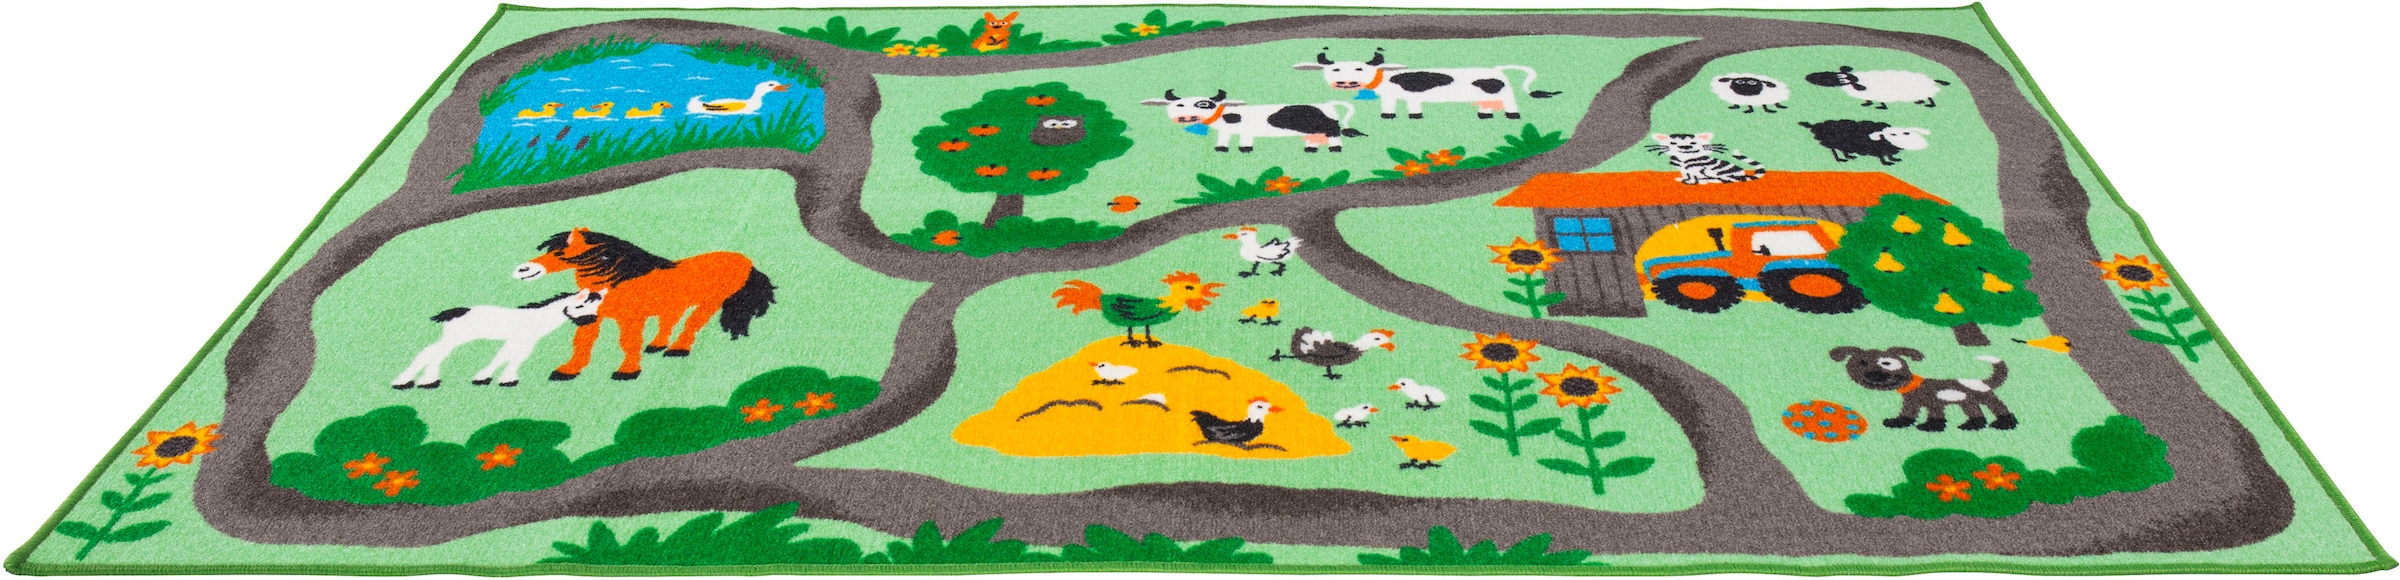 Kinderteppich »Farmstead«, rechteckig, Spiel- und Straßenteppich, Motiv Bauernhof,...